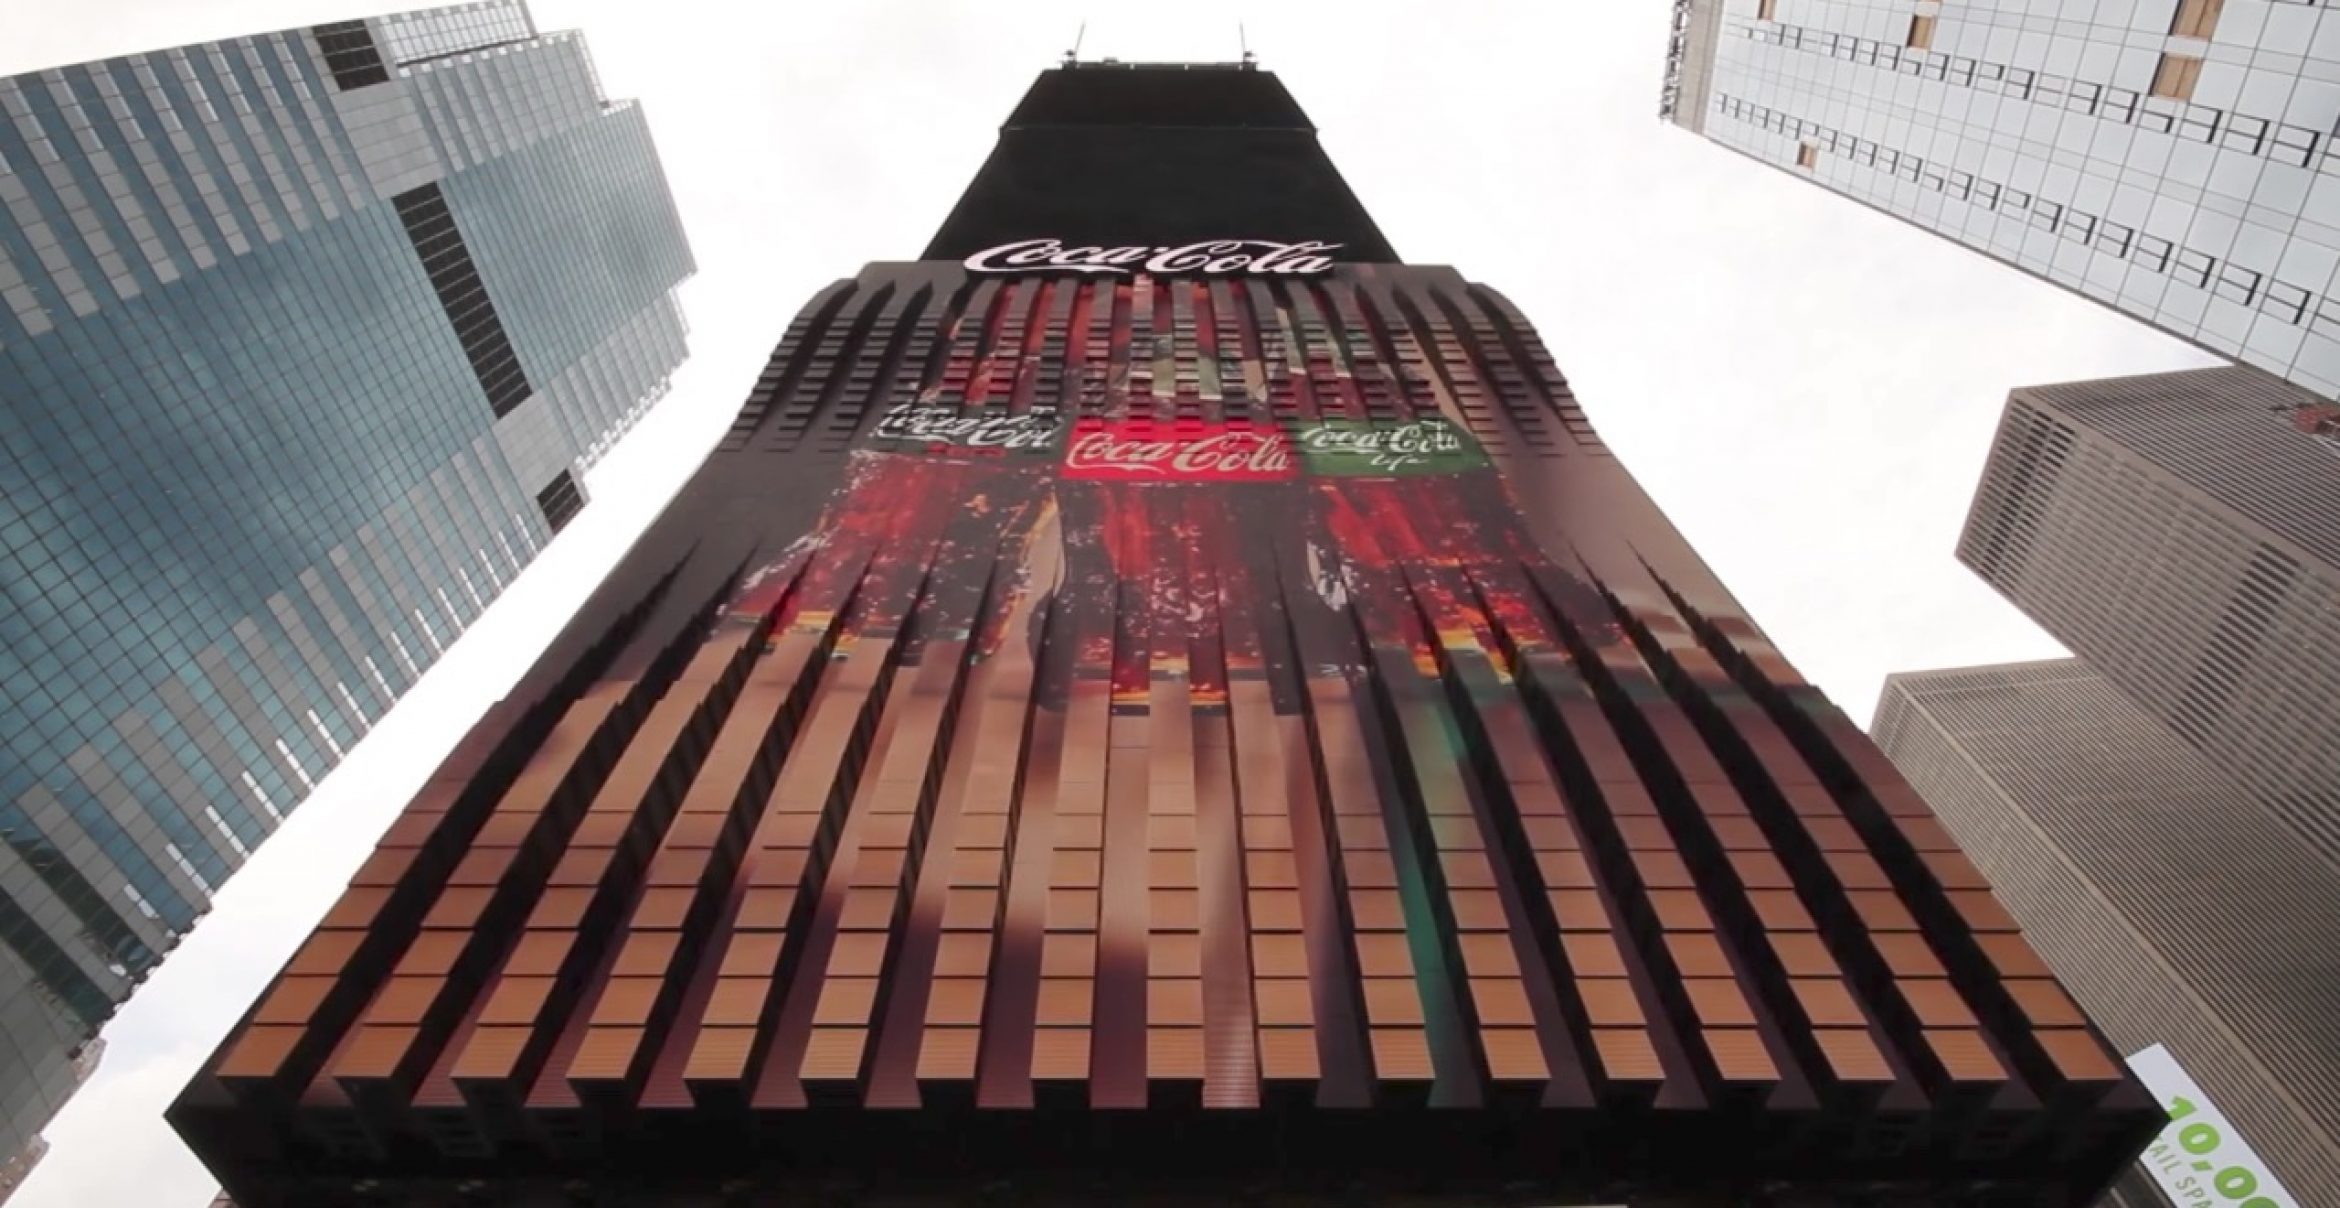 Für dieses 3D-Billboard heimst Coca-Cola zwei Guinness-Weltrekorde ein